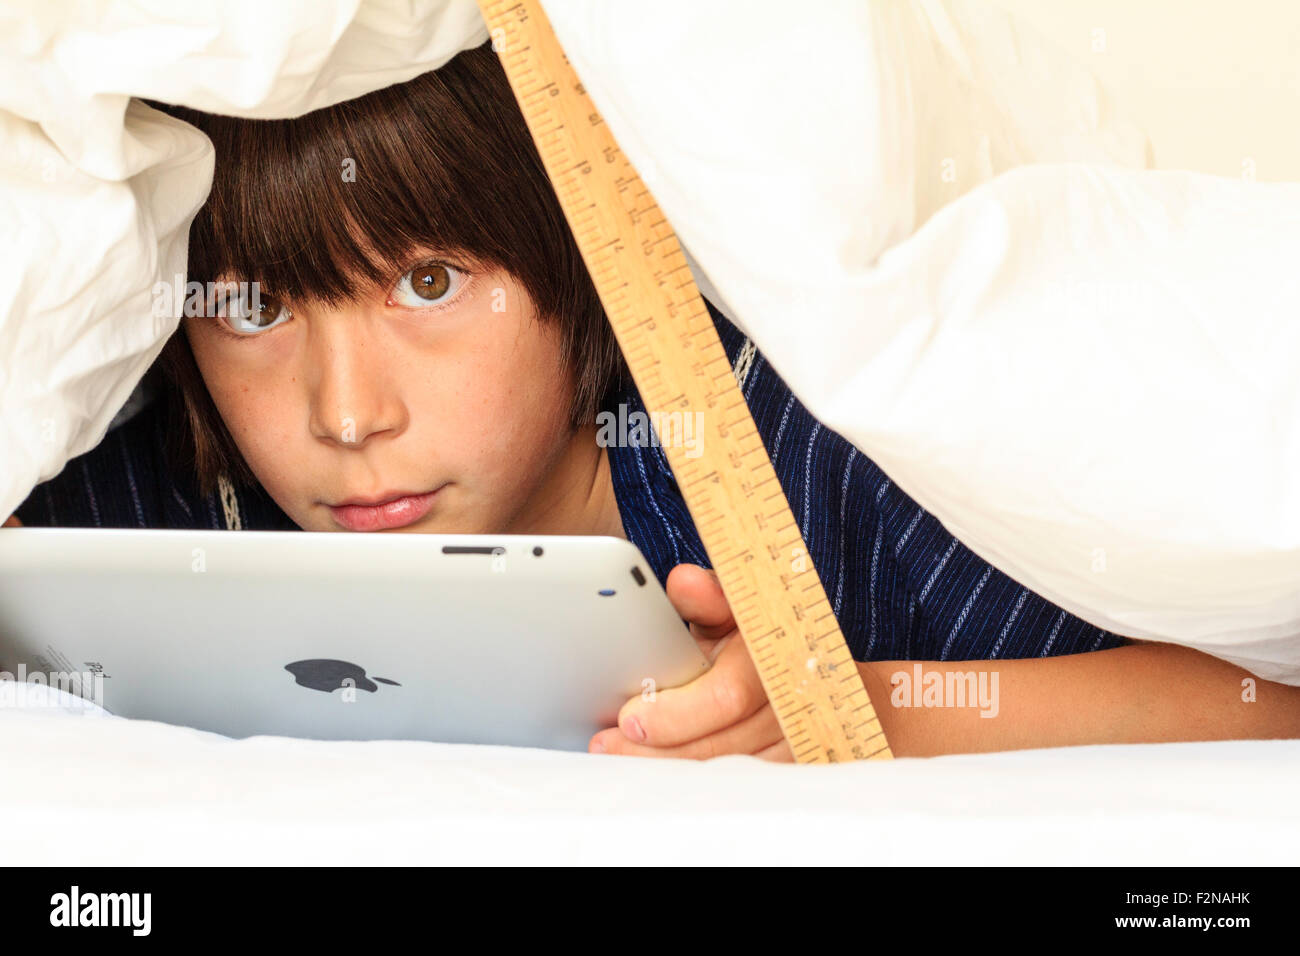 Kaukasier Kind, Junge, 10 - 11 Jahre alt. Die Hälfte unter weißen Bettdecke verstecken abgestützt durch ein Lineal. Kopf und Schultern des Jungen, und er verwendet auch das ipad, Augenkontakt. Stockfoto